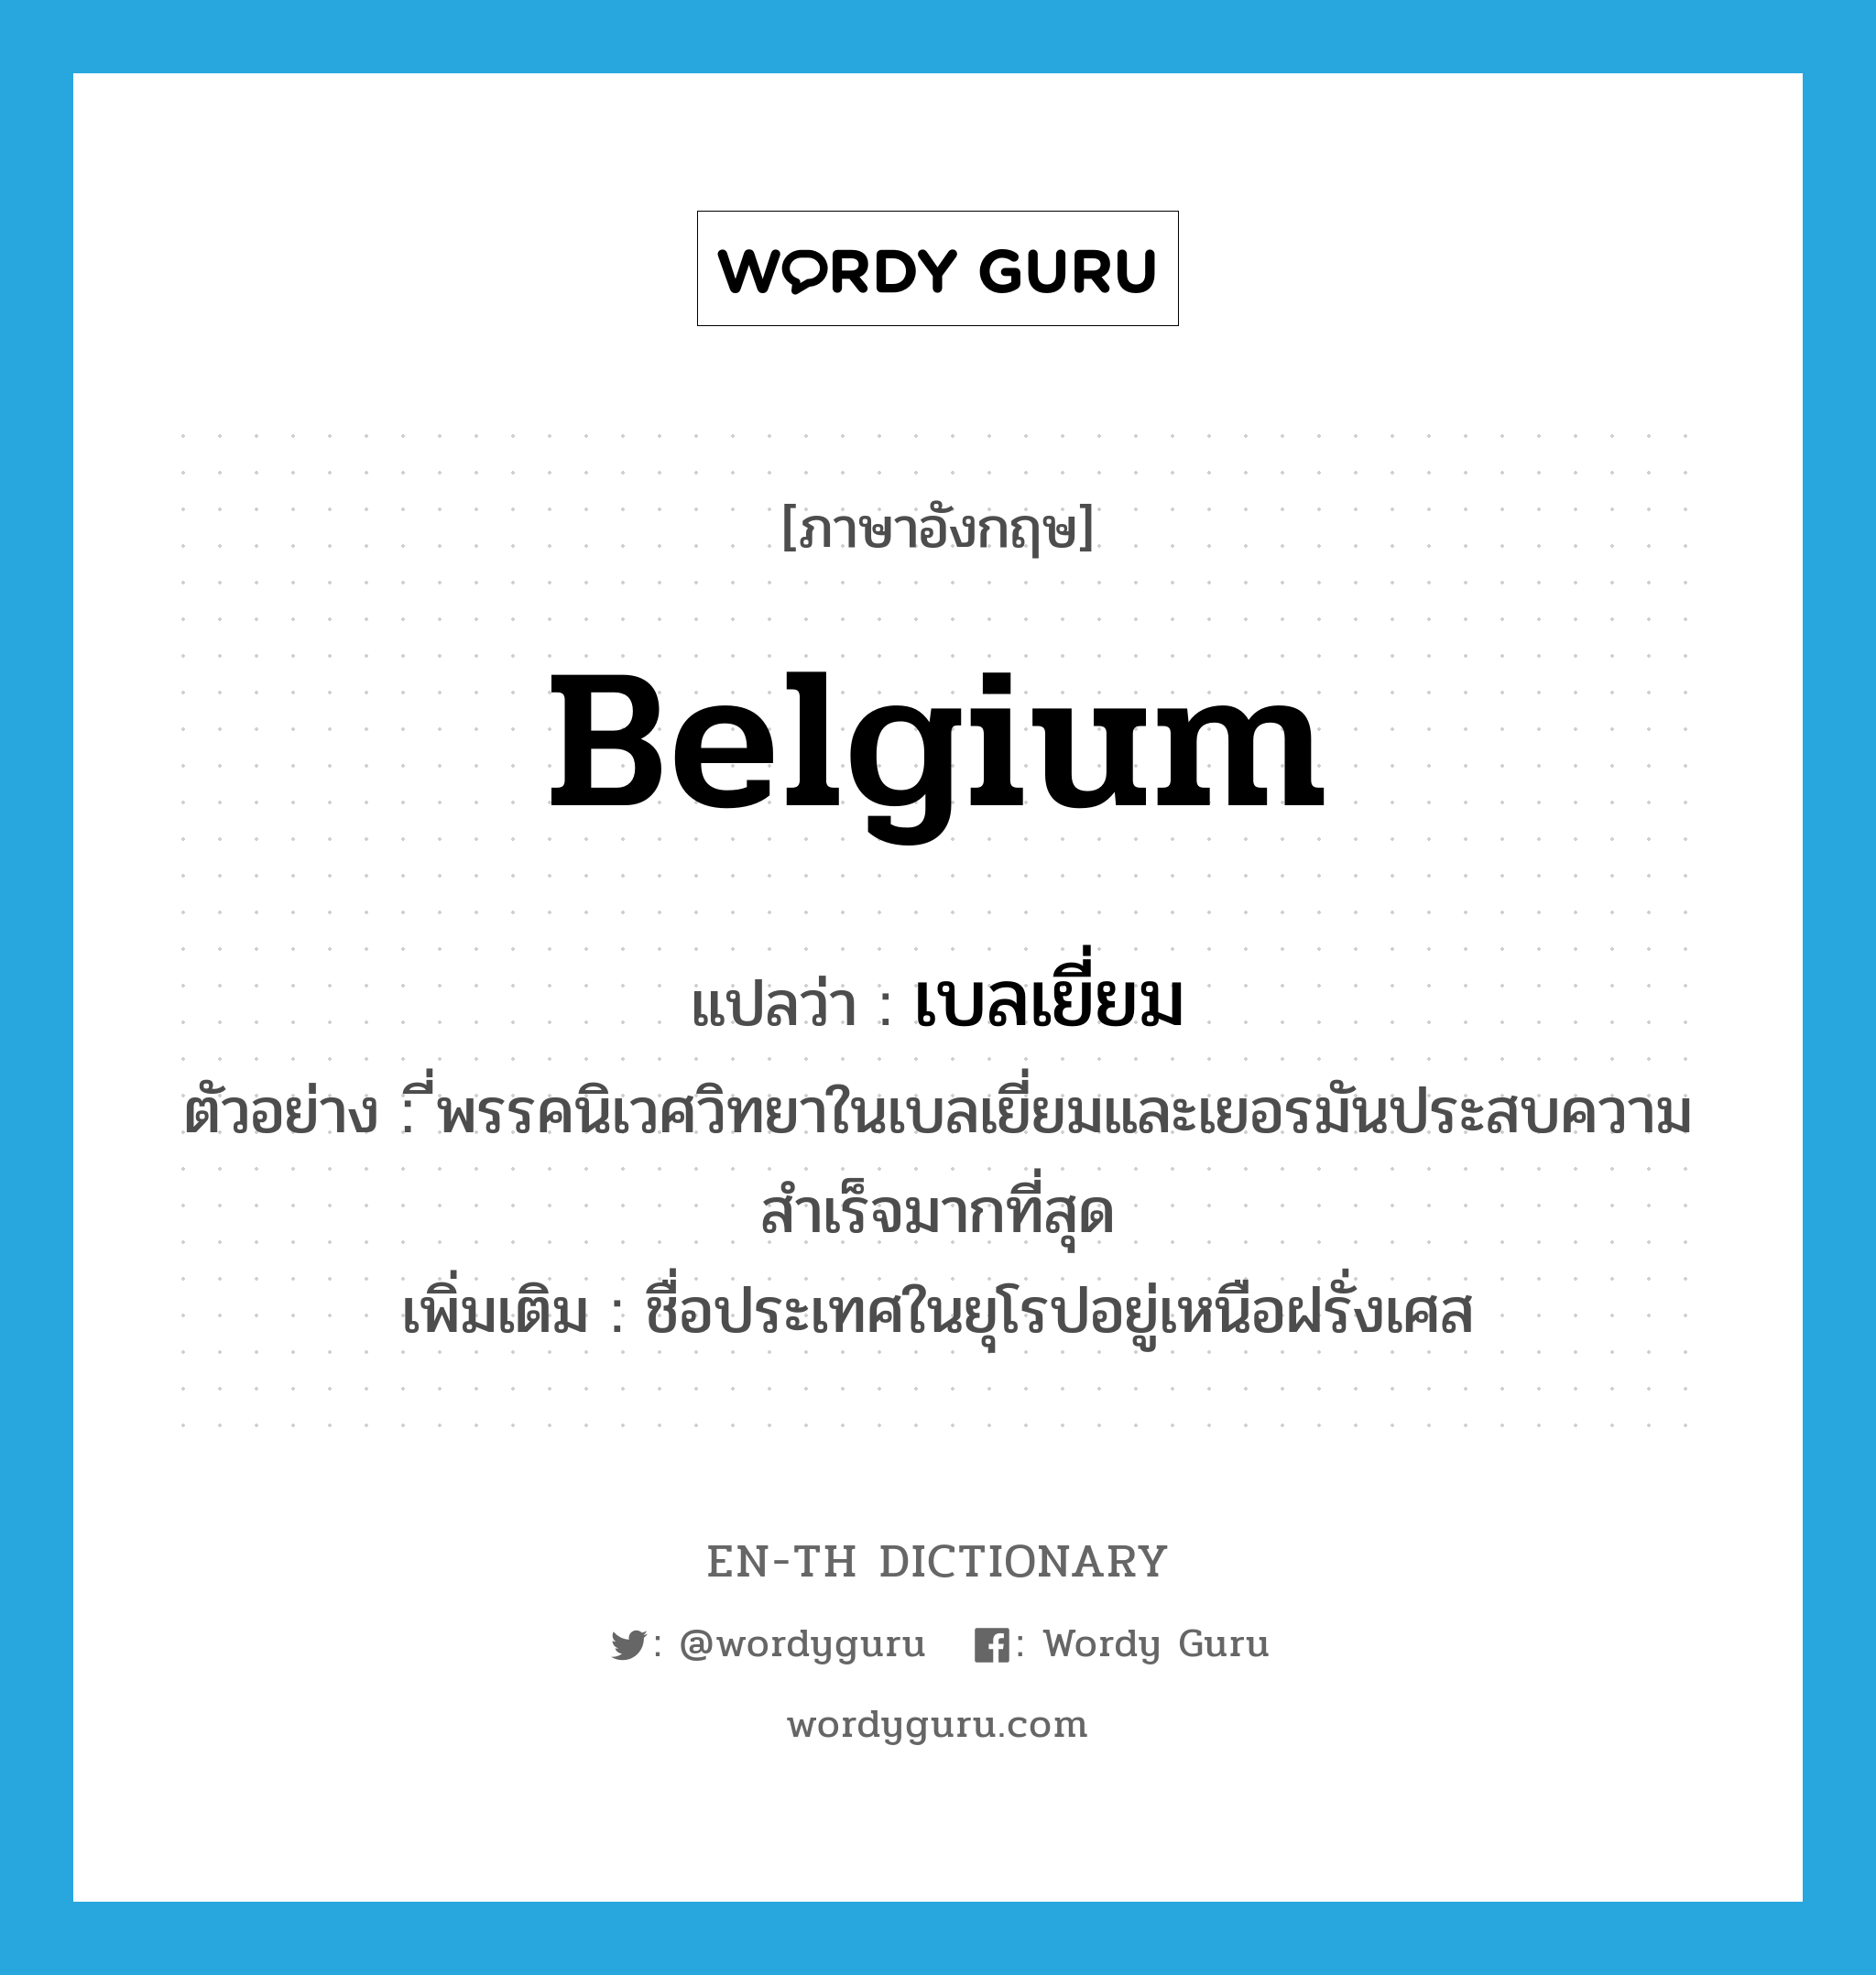 Belgium แปลว่า?, คำศัพท์ภาษาอังกฤษ Belgium แปลว่า เบลเยี่ยม ประเภท N ตัวอย่าง ี่พรรคนิเวศวิทยาในเบลเยี่ยมและเยอรมันประสบความสำเร็จมากที่สุด เพิ่มเติม ชื่อประเทศในยุโรปอยู่เหนือฝรั่งเศส หมวด N